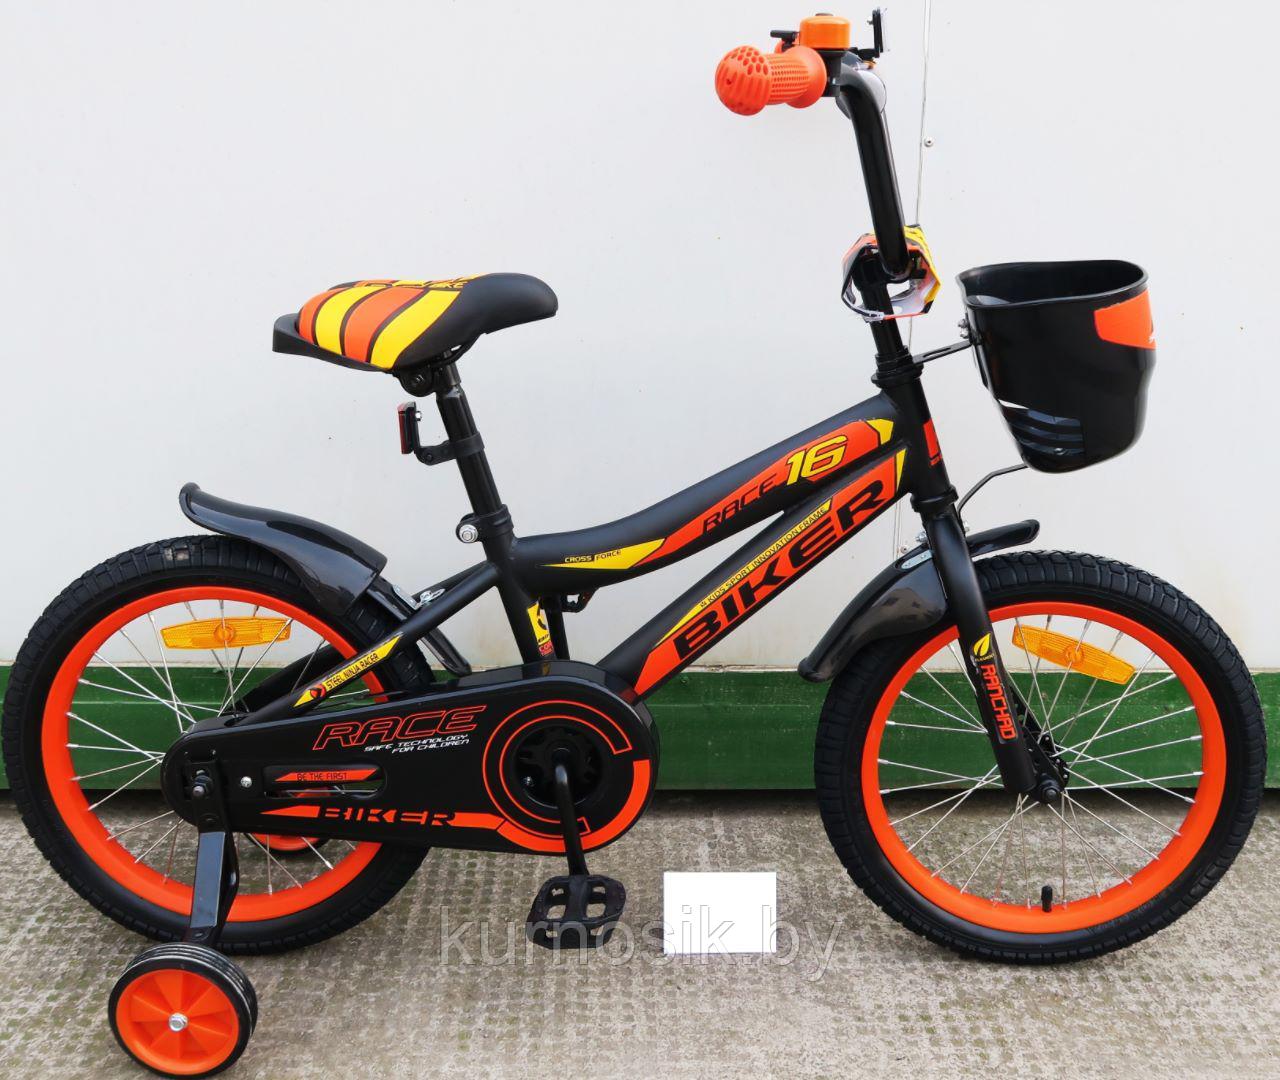 Детский велосипед Biker 20" (6-9 лет) Черно-оранжевый